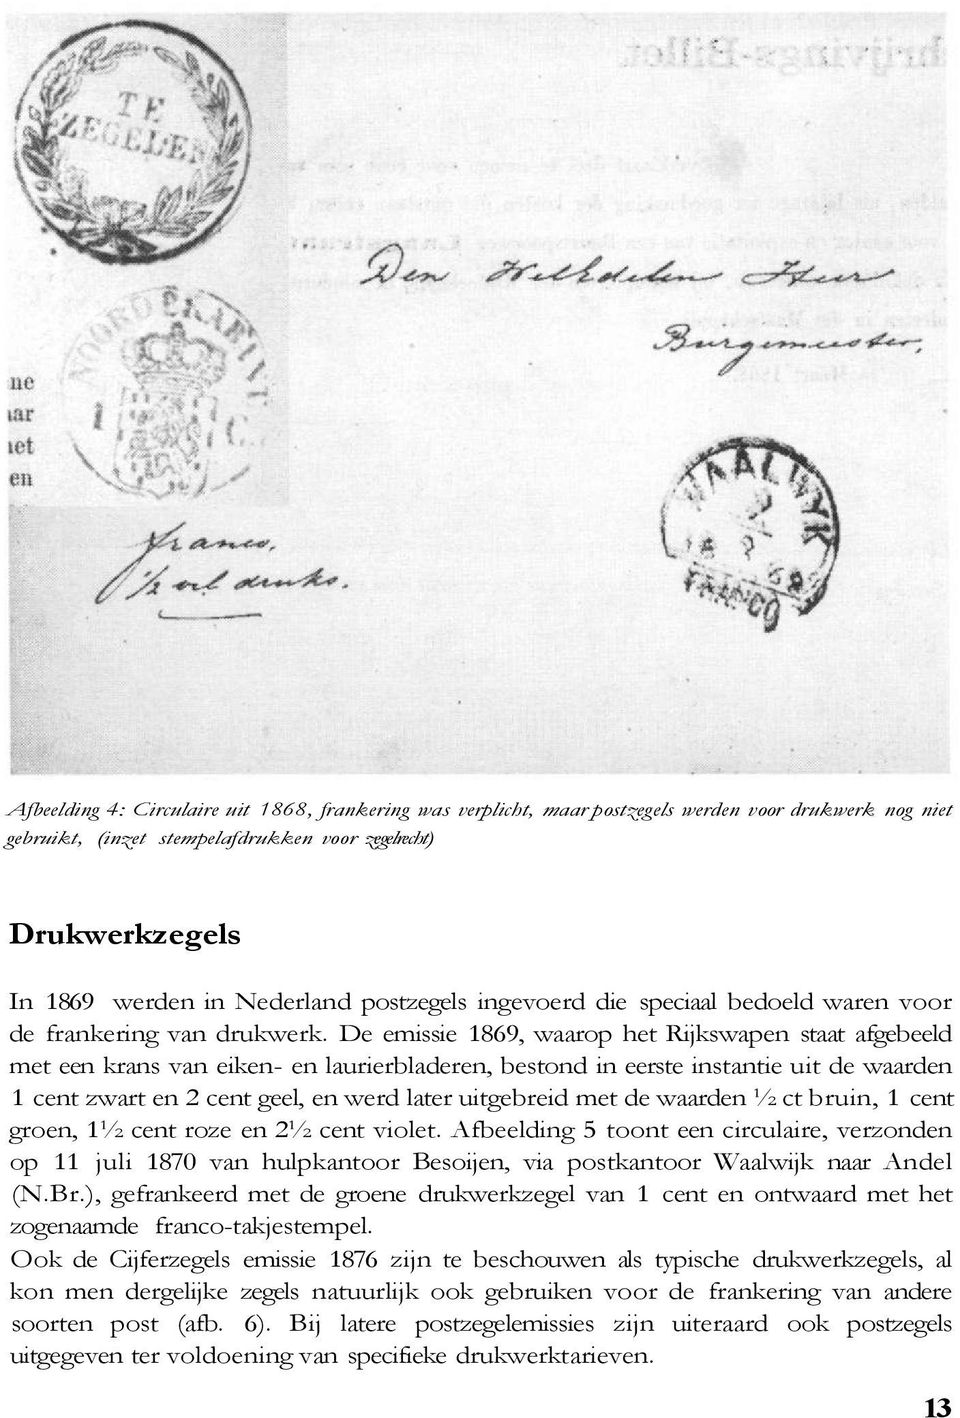 De emissie 1869, waarop het Rijkswapen staat afgebeeld met een krans van eiken- en laurierbladeren, bestond in eerste instantie uit de waarden 1 cent zwart en 2 cent geel, en werd later uitgebreid